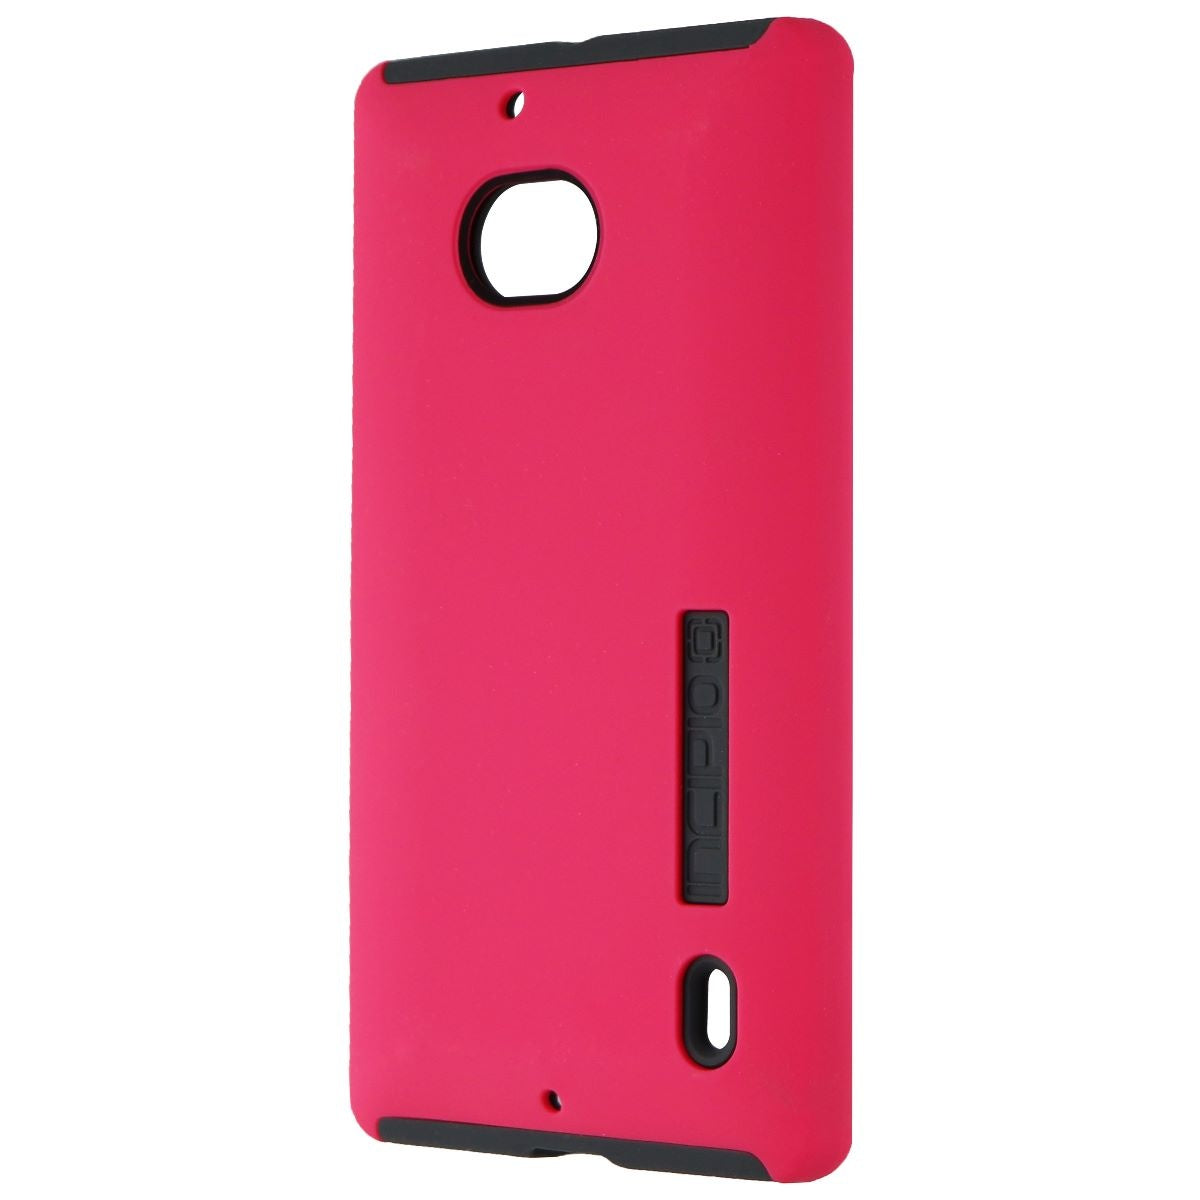 Incipio Dualpro Dual Layer Case for Nokia Lumia Icon - Pink / Gray - NK-181-PNK